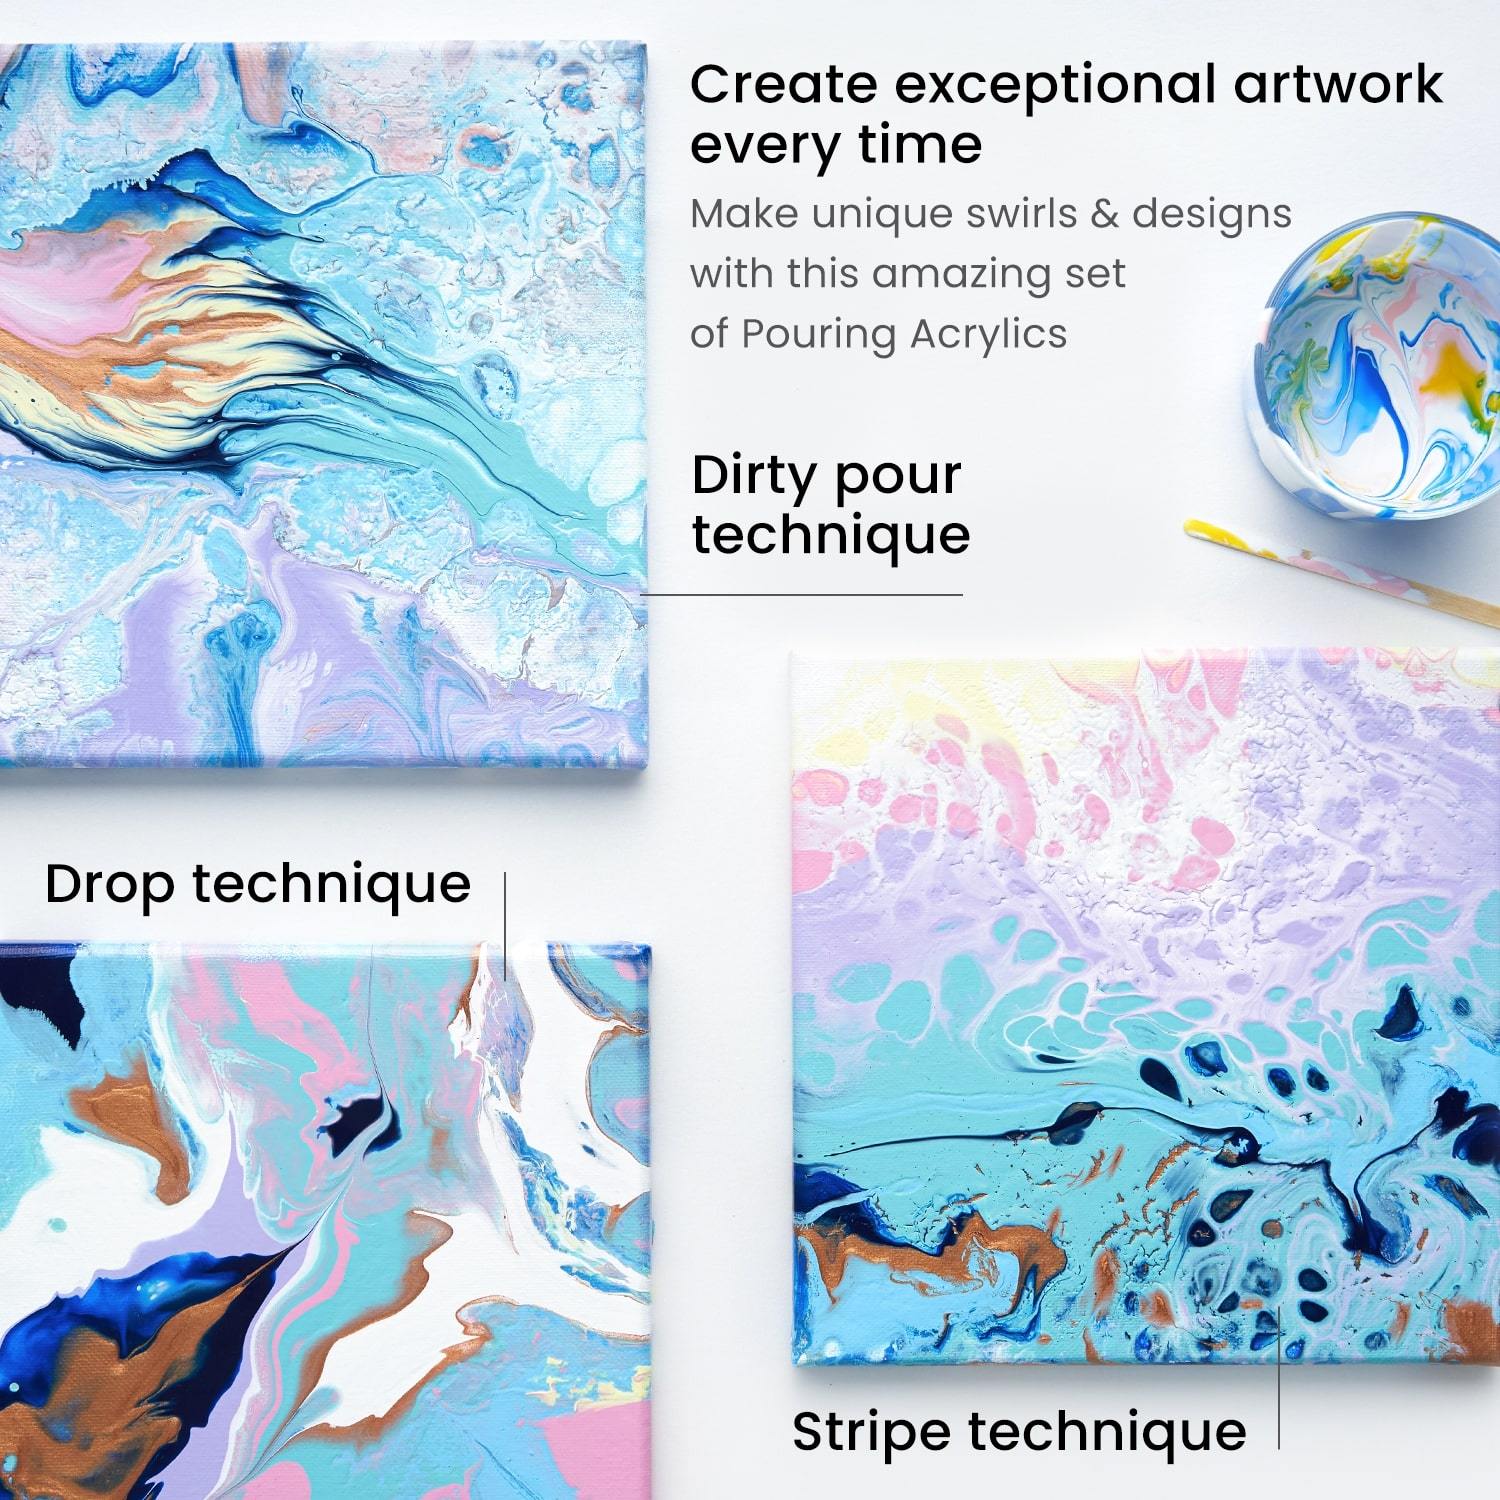 Acrylic Pour Painting: 3 Vibrant Acrylic Pours